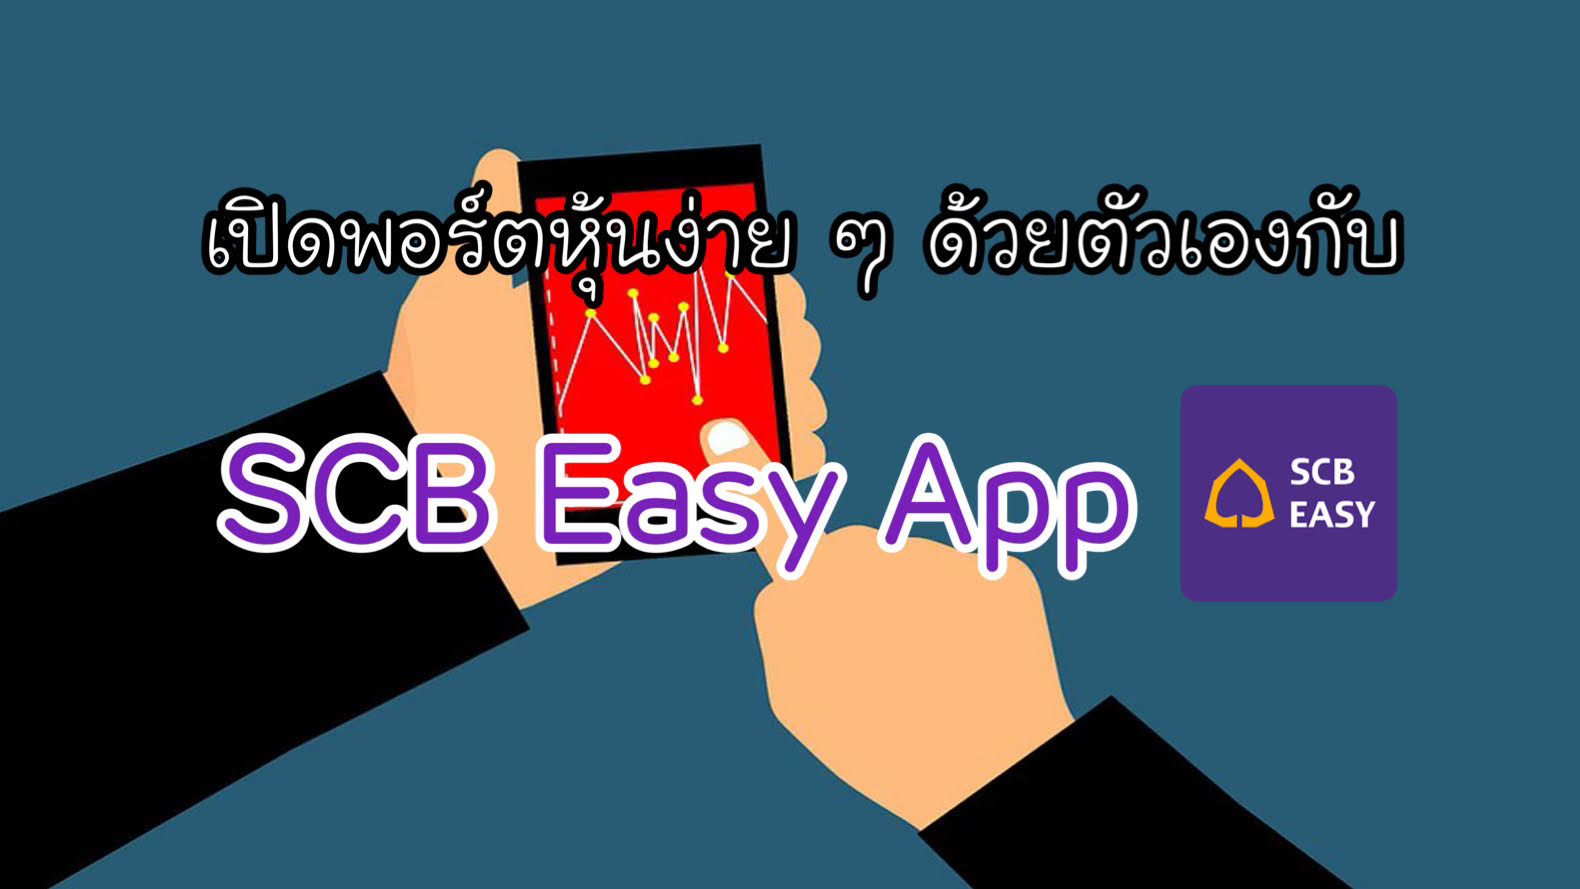 เปิดพอร์ตหุ้นง่าย ๆ ด้วยตัวเองกับ Scb Easy App